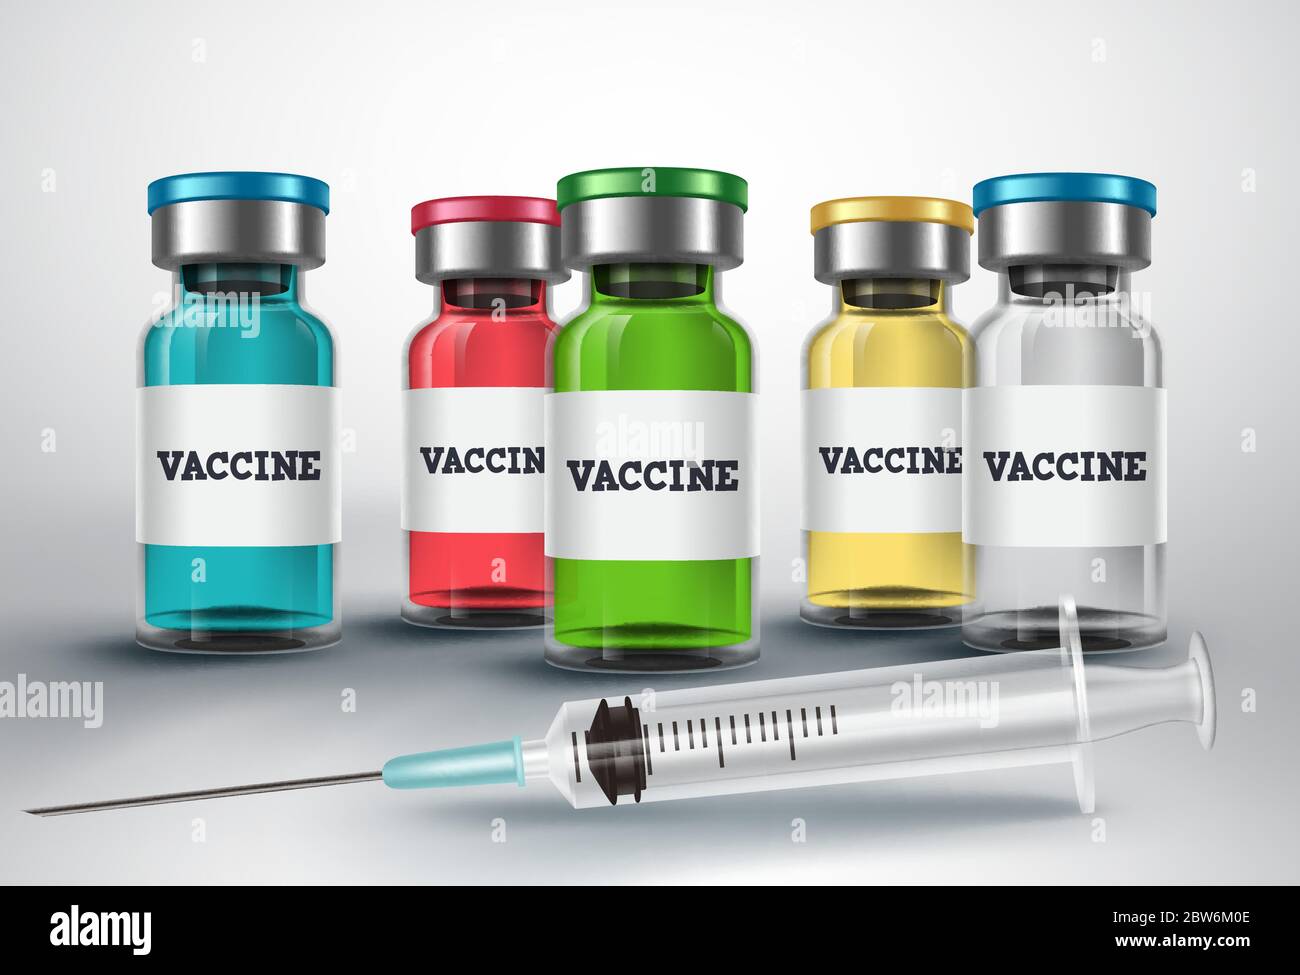 Impfstoffflasche Vektor-Design. Impfstoff und Spritze Impfstoff Injektion für Covid-19 Corona Virus antivirale Immunisierung Behandlung. Stock Vektor